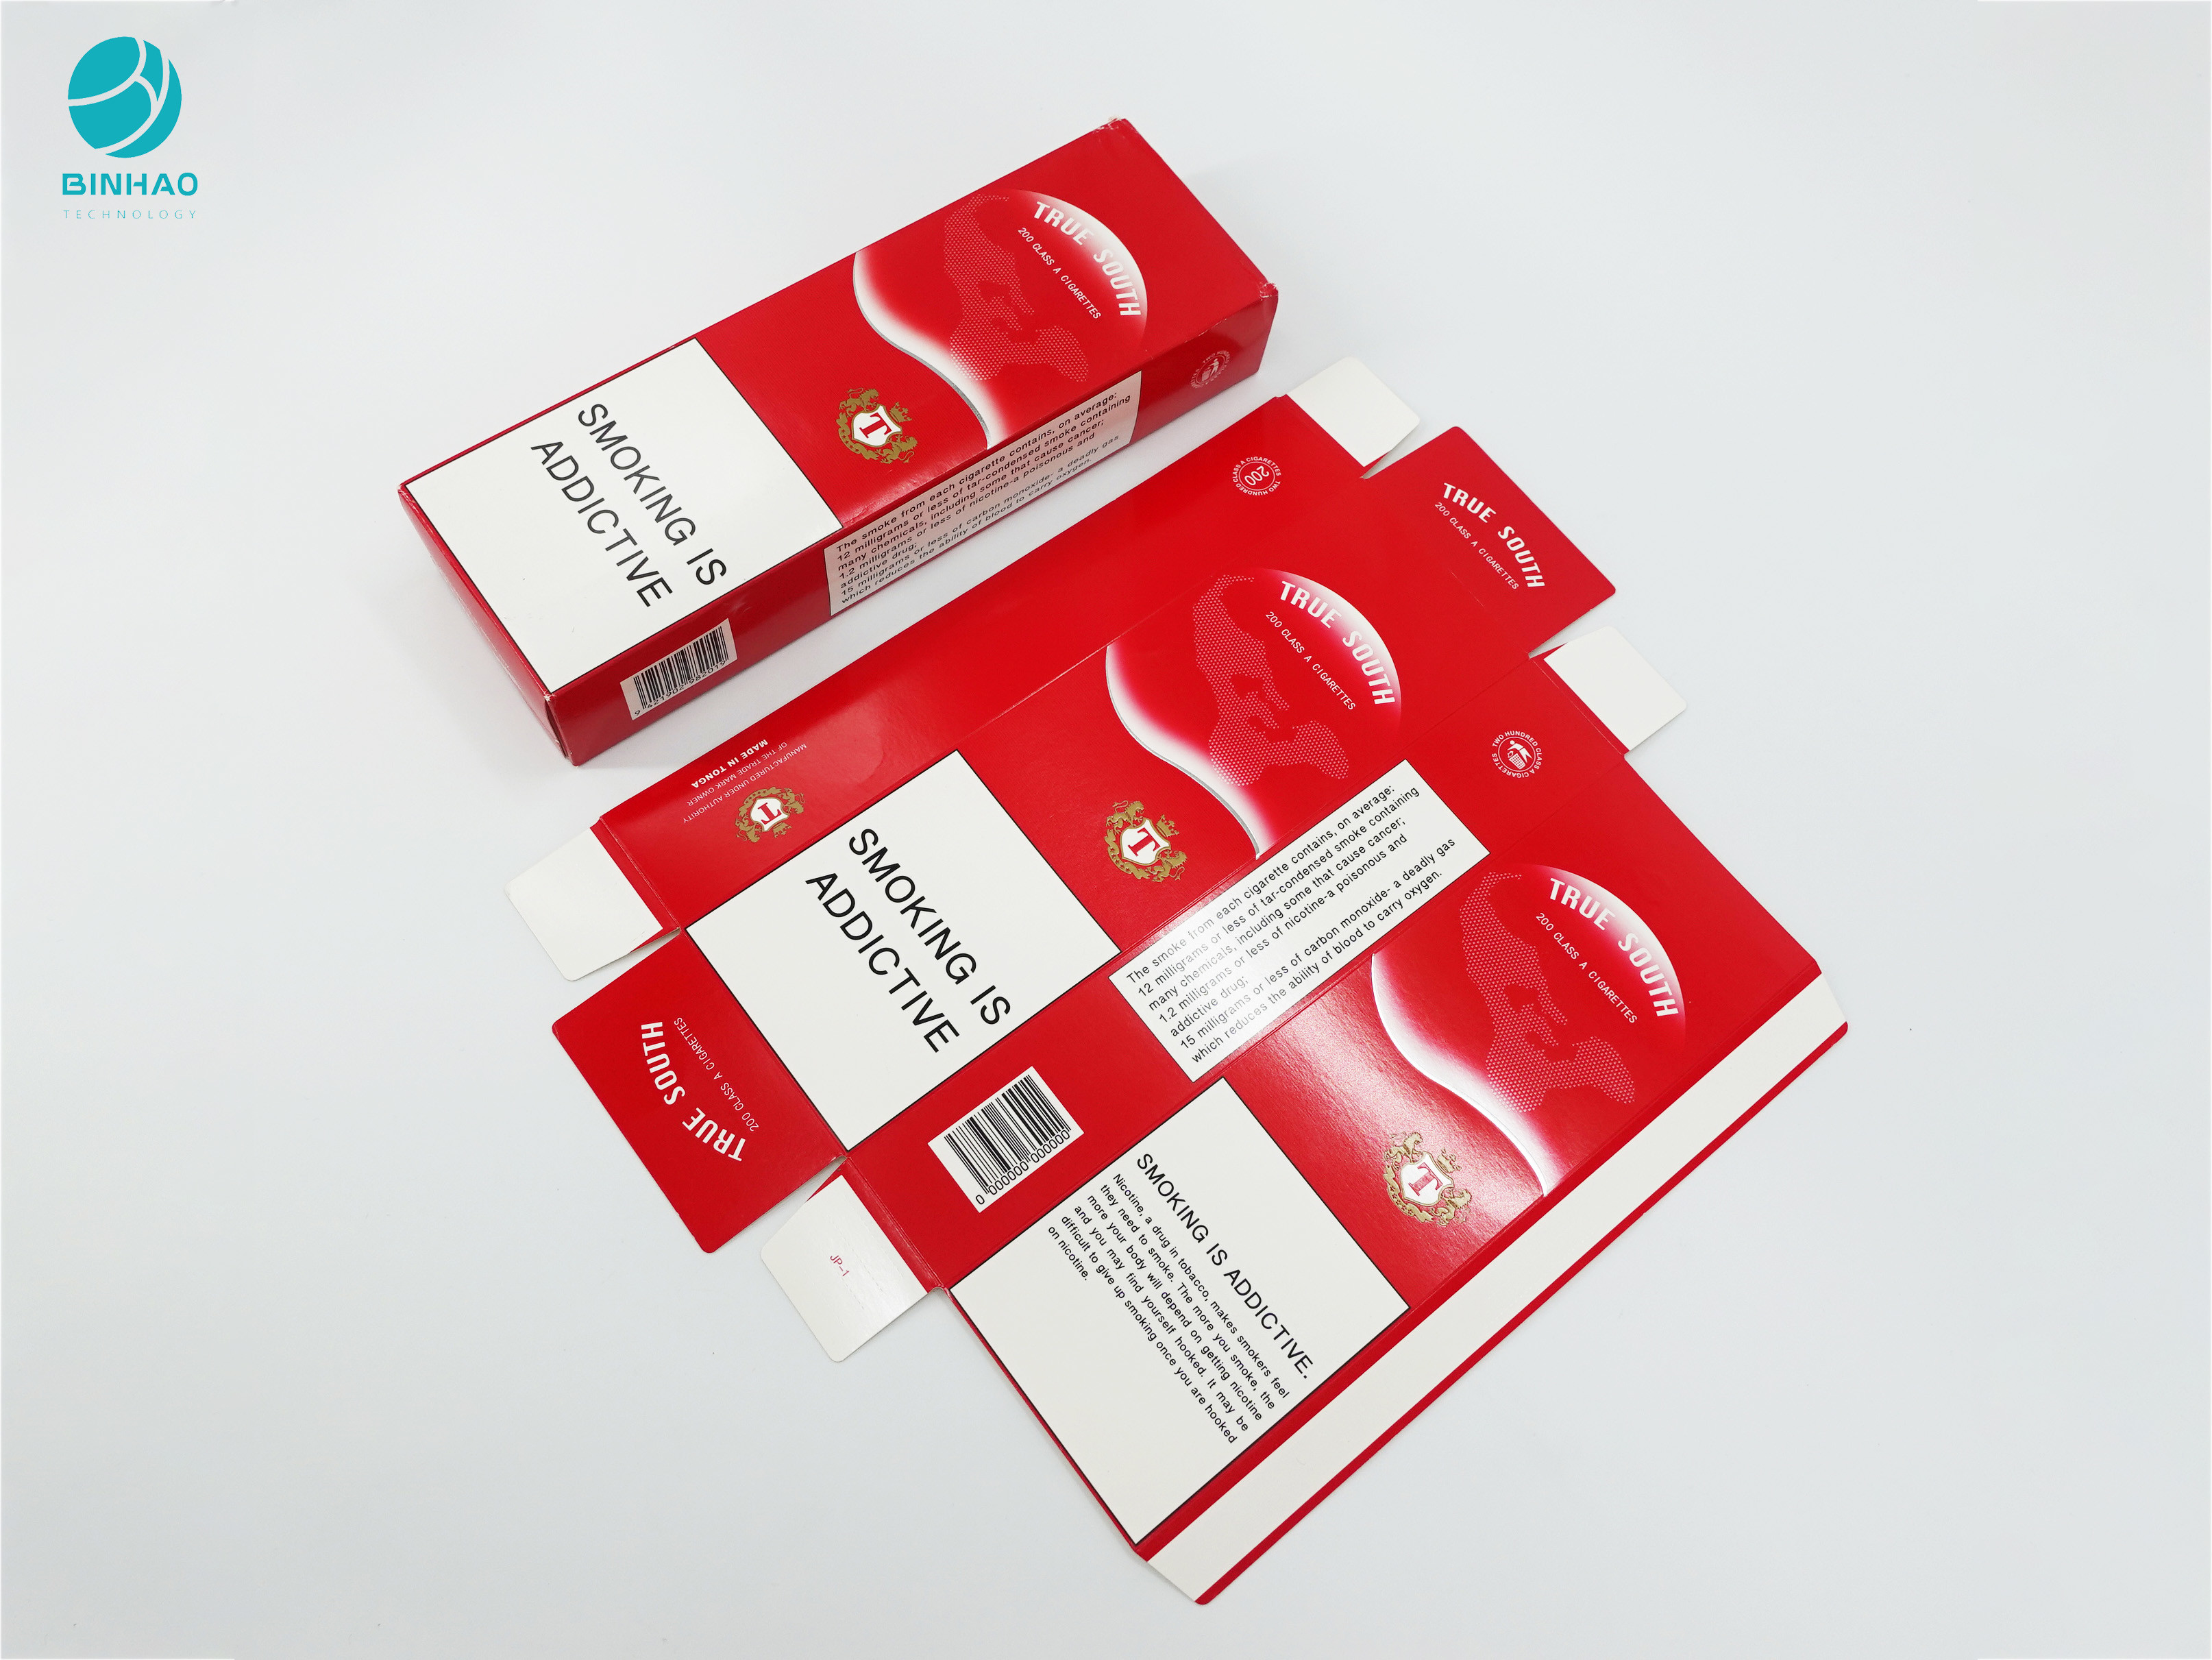 موارد بسته بندی مقوایی قرمز رنگ تزئینی برای محصولات دخانیات سیگار